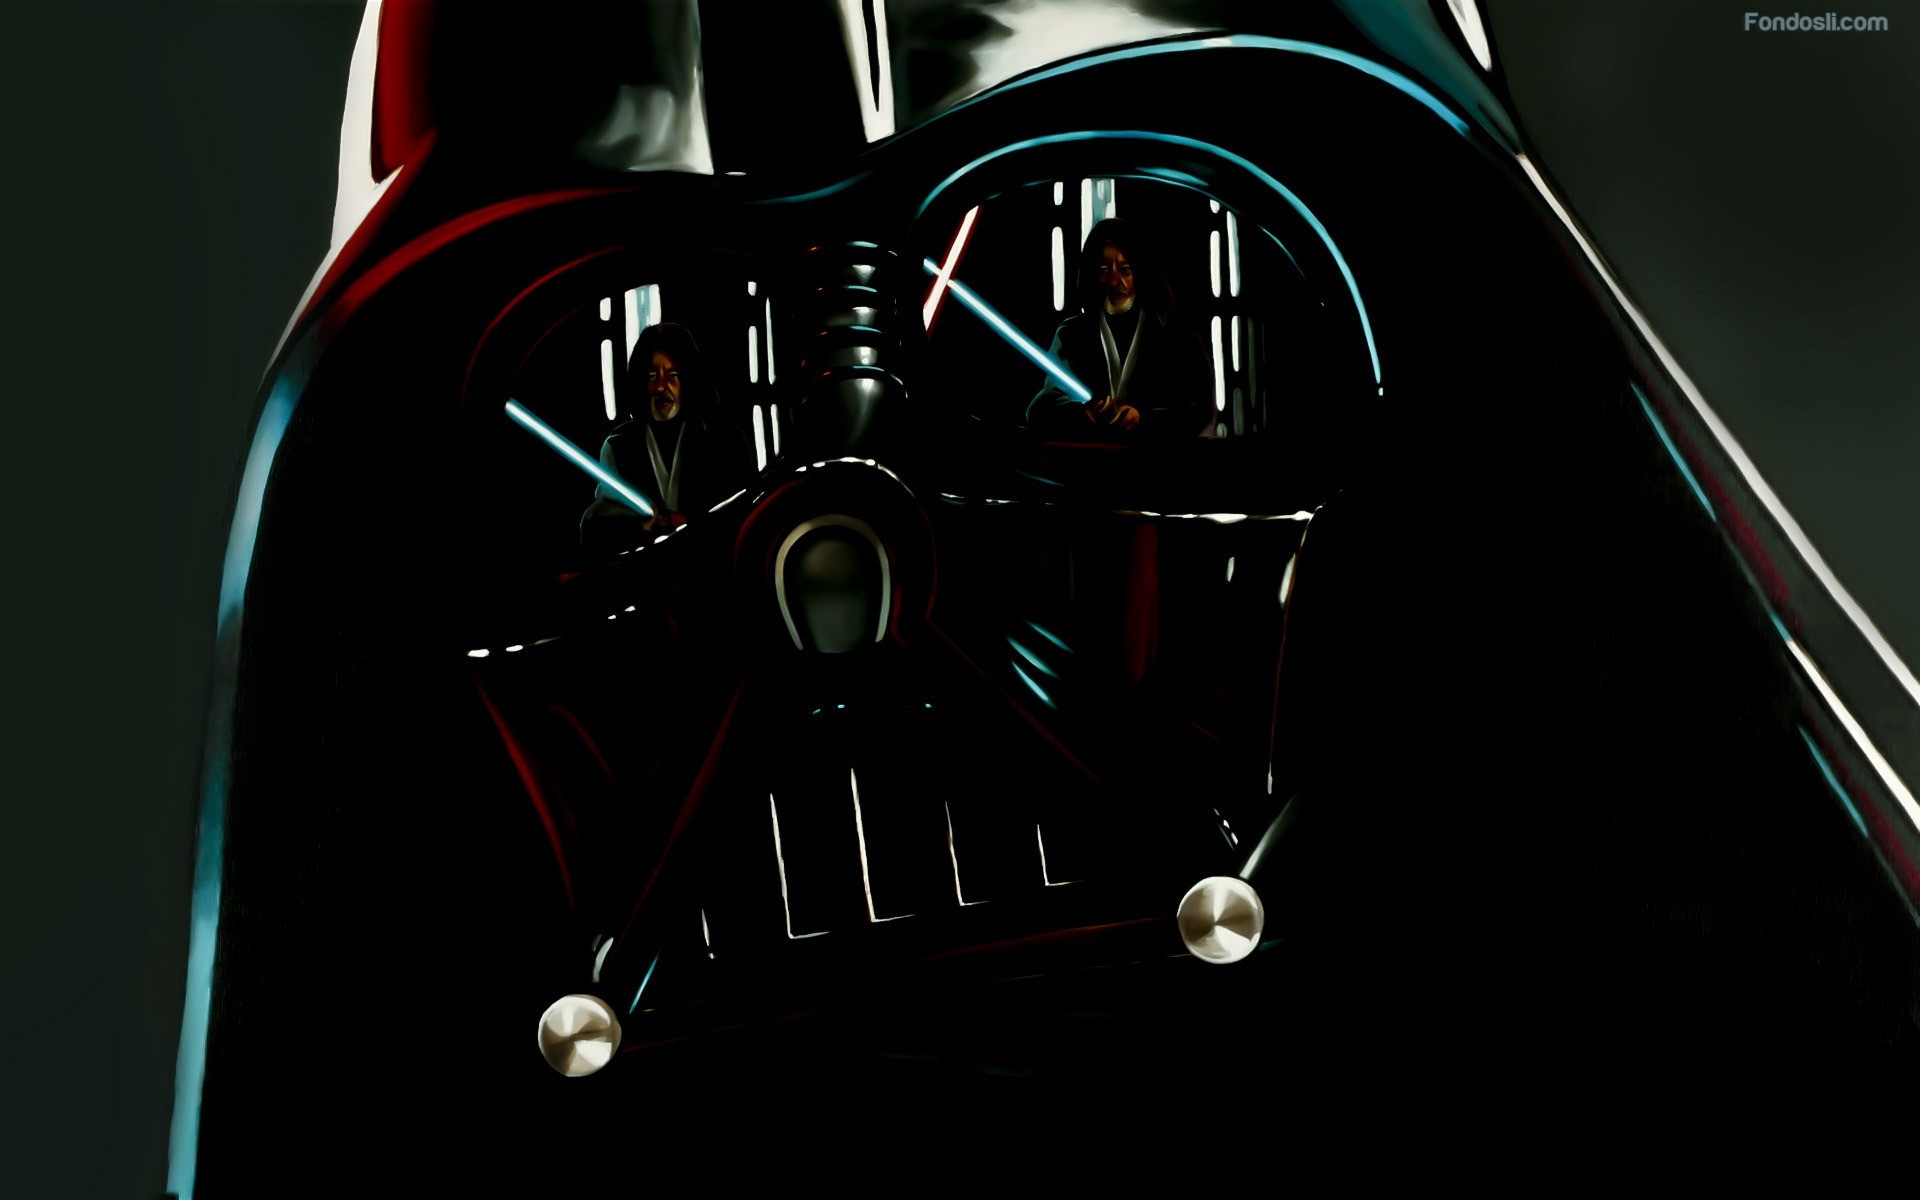 Darth Vaderdarth Vader Wallpaper 1080p